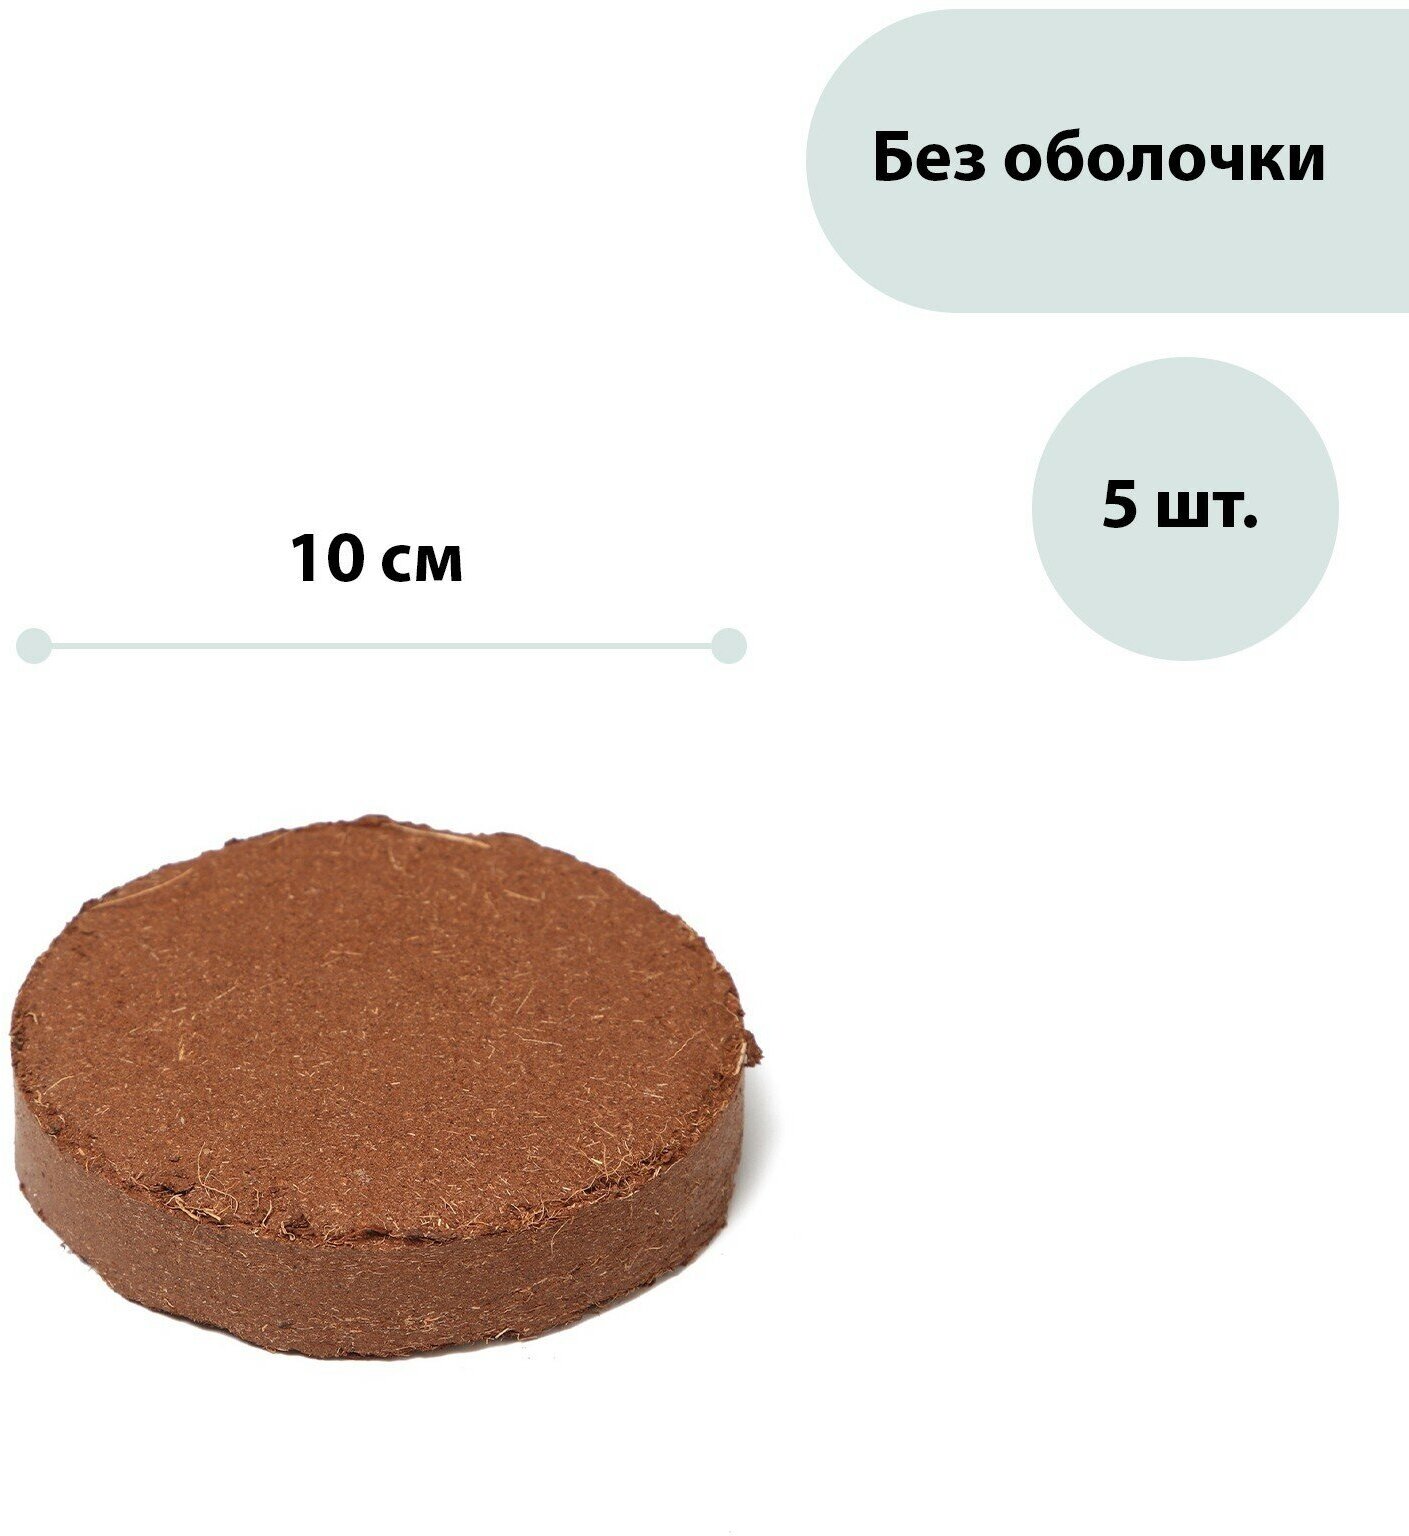 Таблетки кокосовые, d = 10 см, набор 5 шт, без оболочки, Greengo - фотография № 1